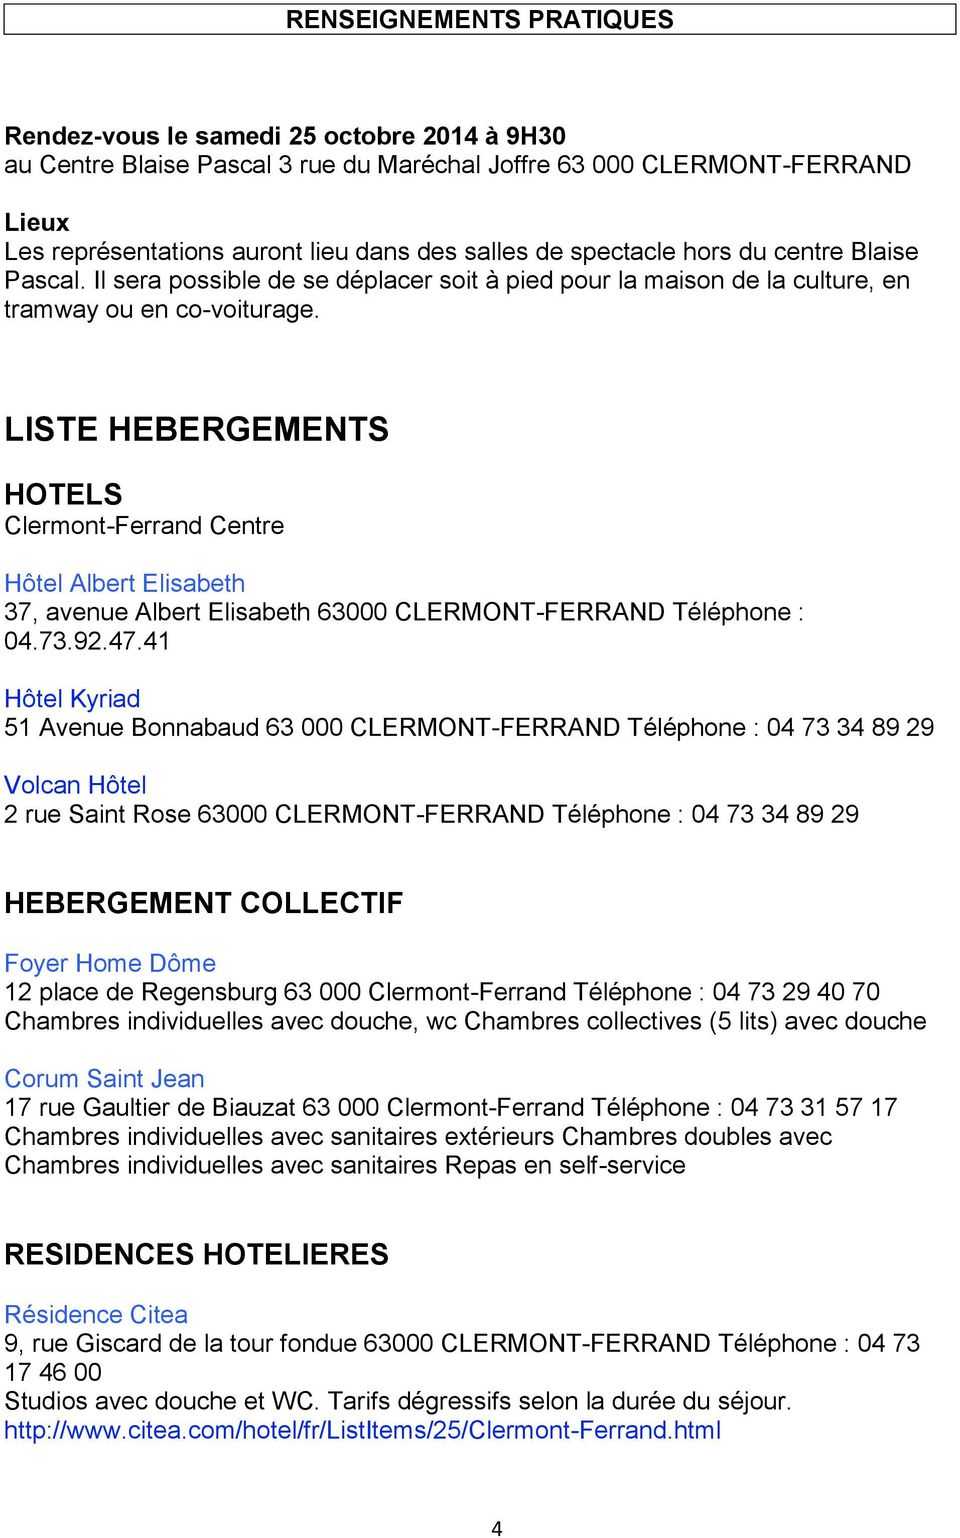 LISTE HEBERGEMENTS HOTELS Clermont-Ferrand Centre Hôtel Albert Elisabeth 37, avenue Albert Elisabeth 63000 CLERMONT-FERRAND Téléphone : 04.73.92.47.